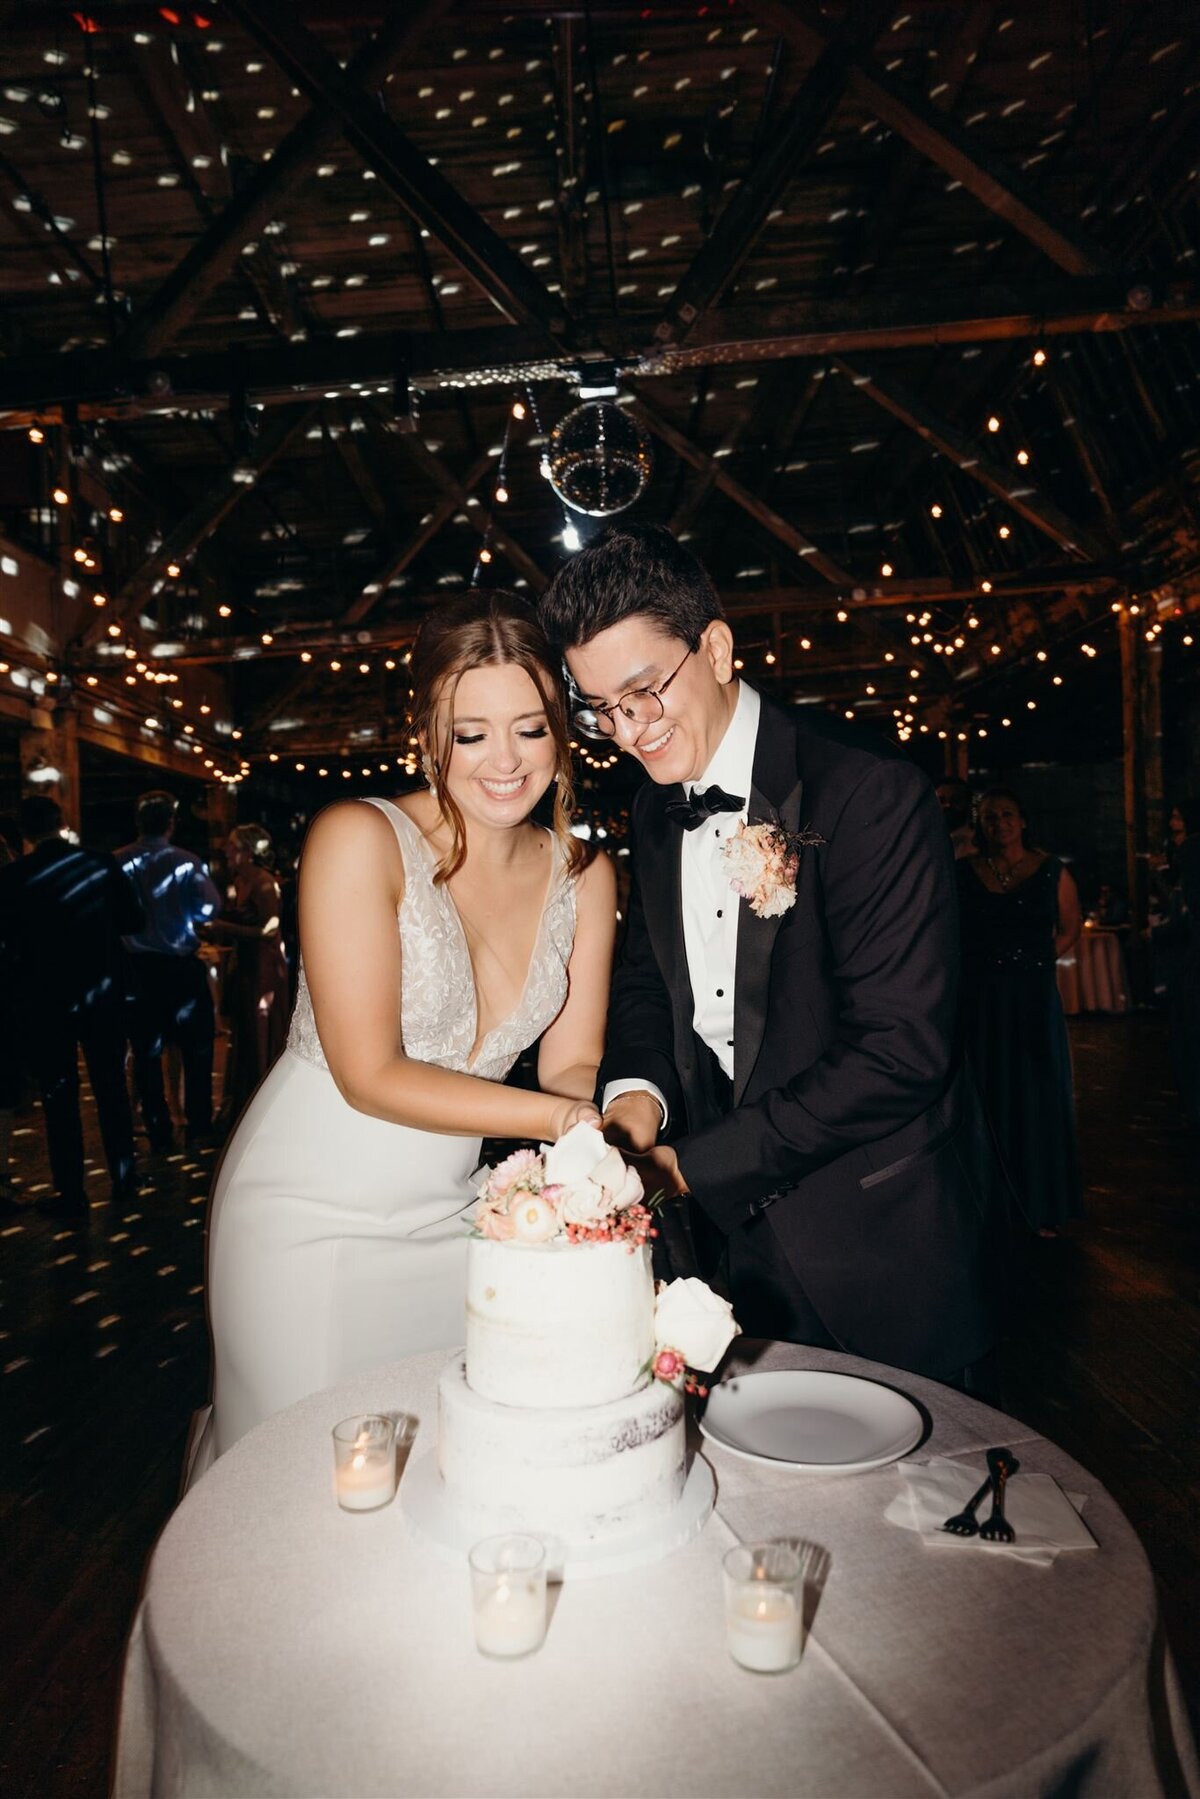 flash wedding photos during cake cutting